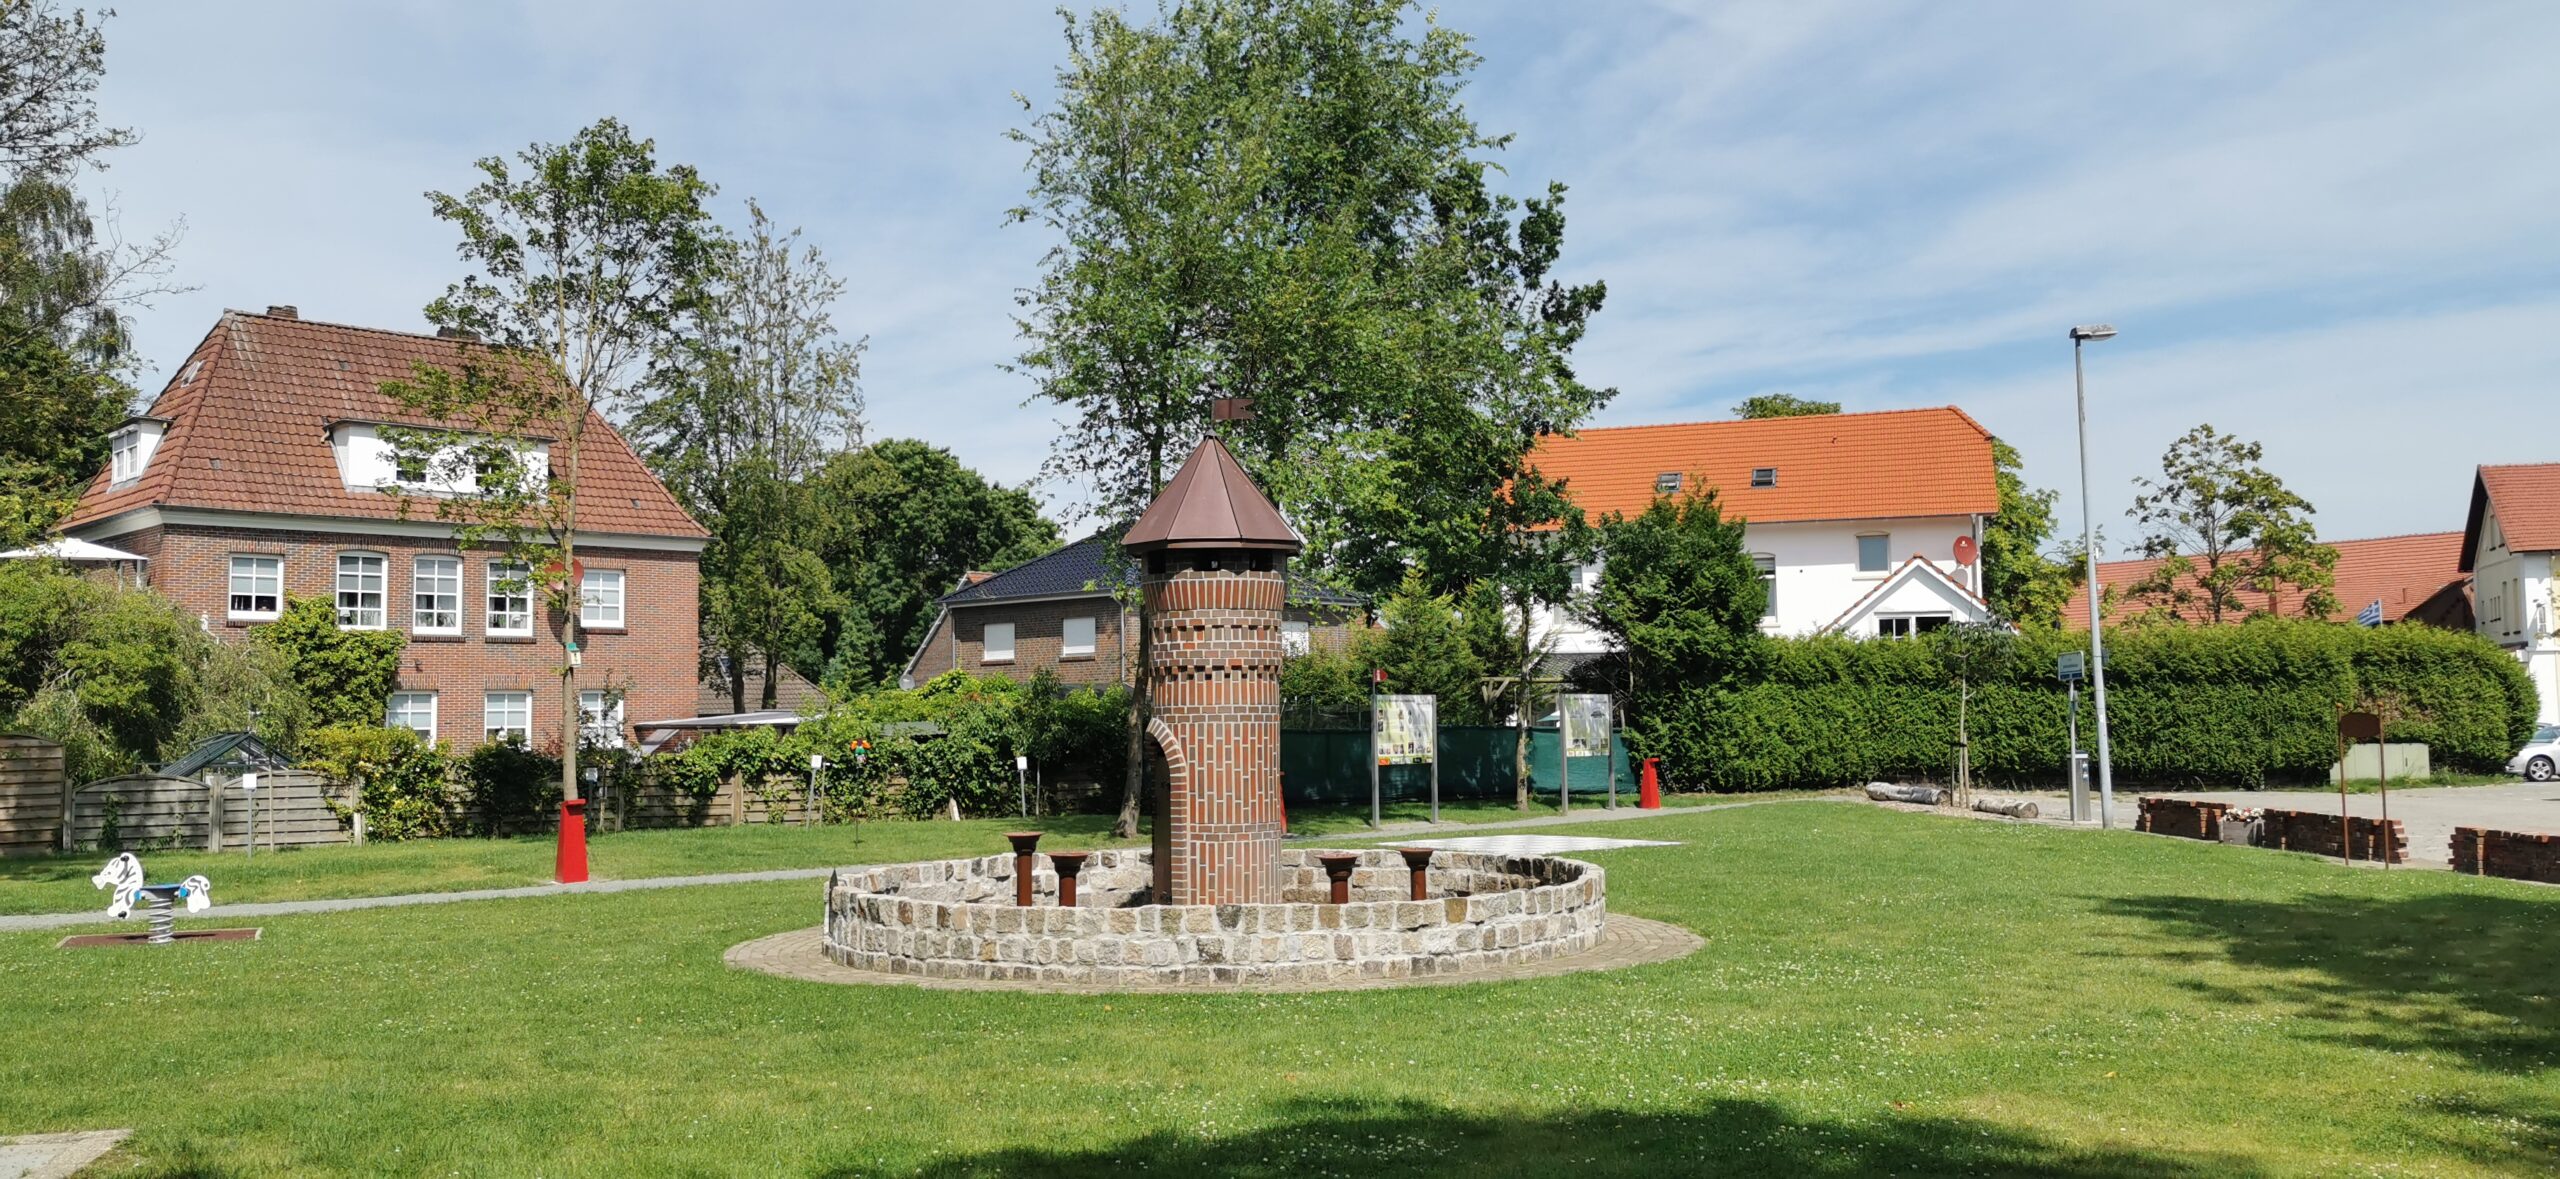 Festungsbrunnen-Turm Apen